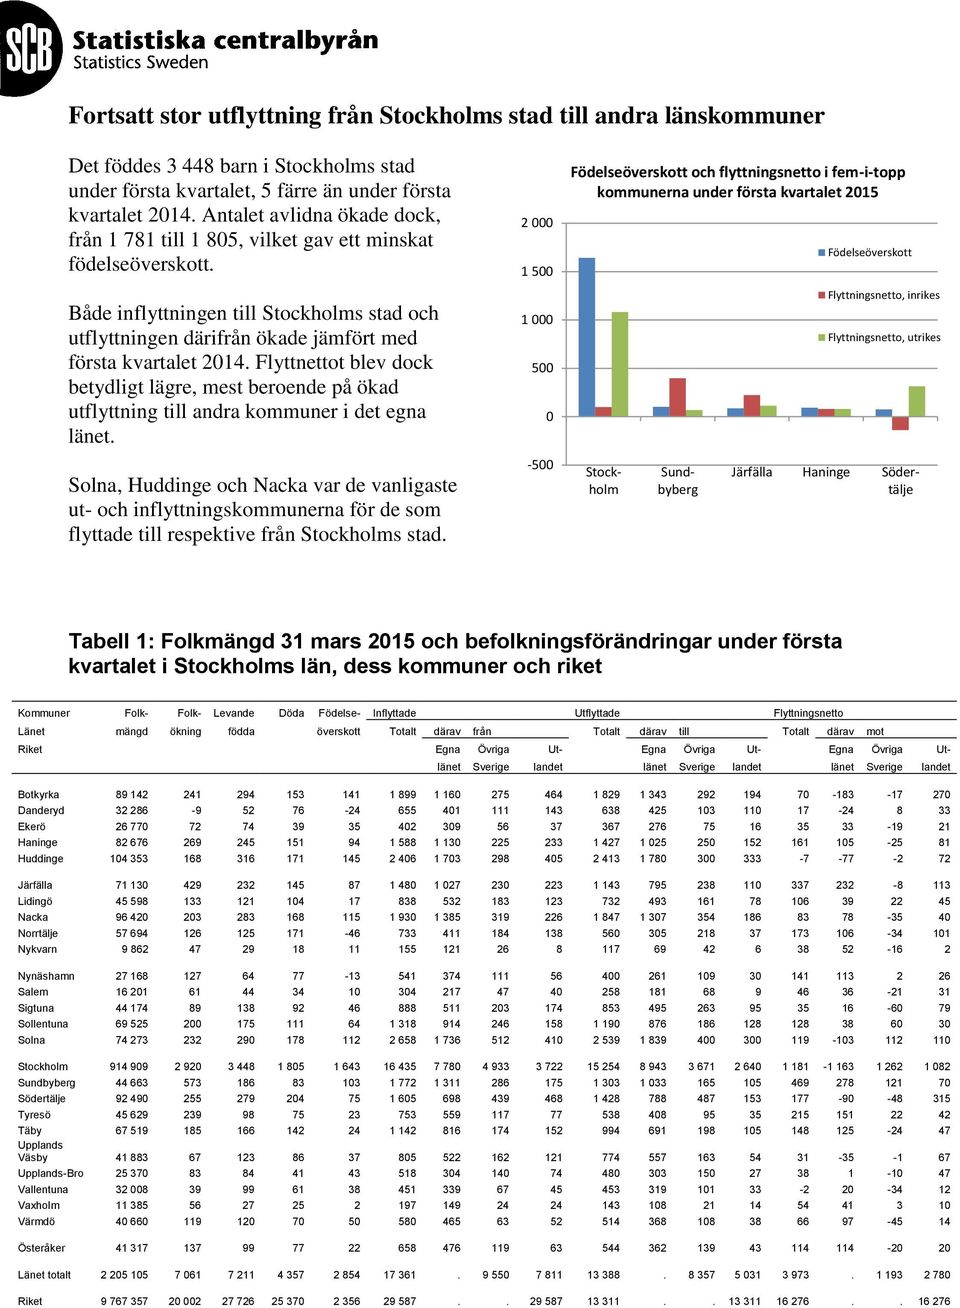 2 1 5 Födelseöverskott och flyttningsnetto i fem-i-topp kommunerna under första kvartalet 215 Födelseöverskott Både inflyttningen till Stockholms stad och utflyttningen därifrån ökade jämfört med